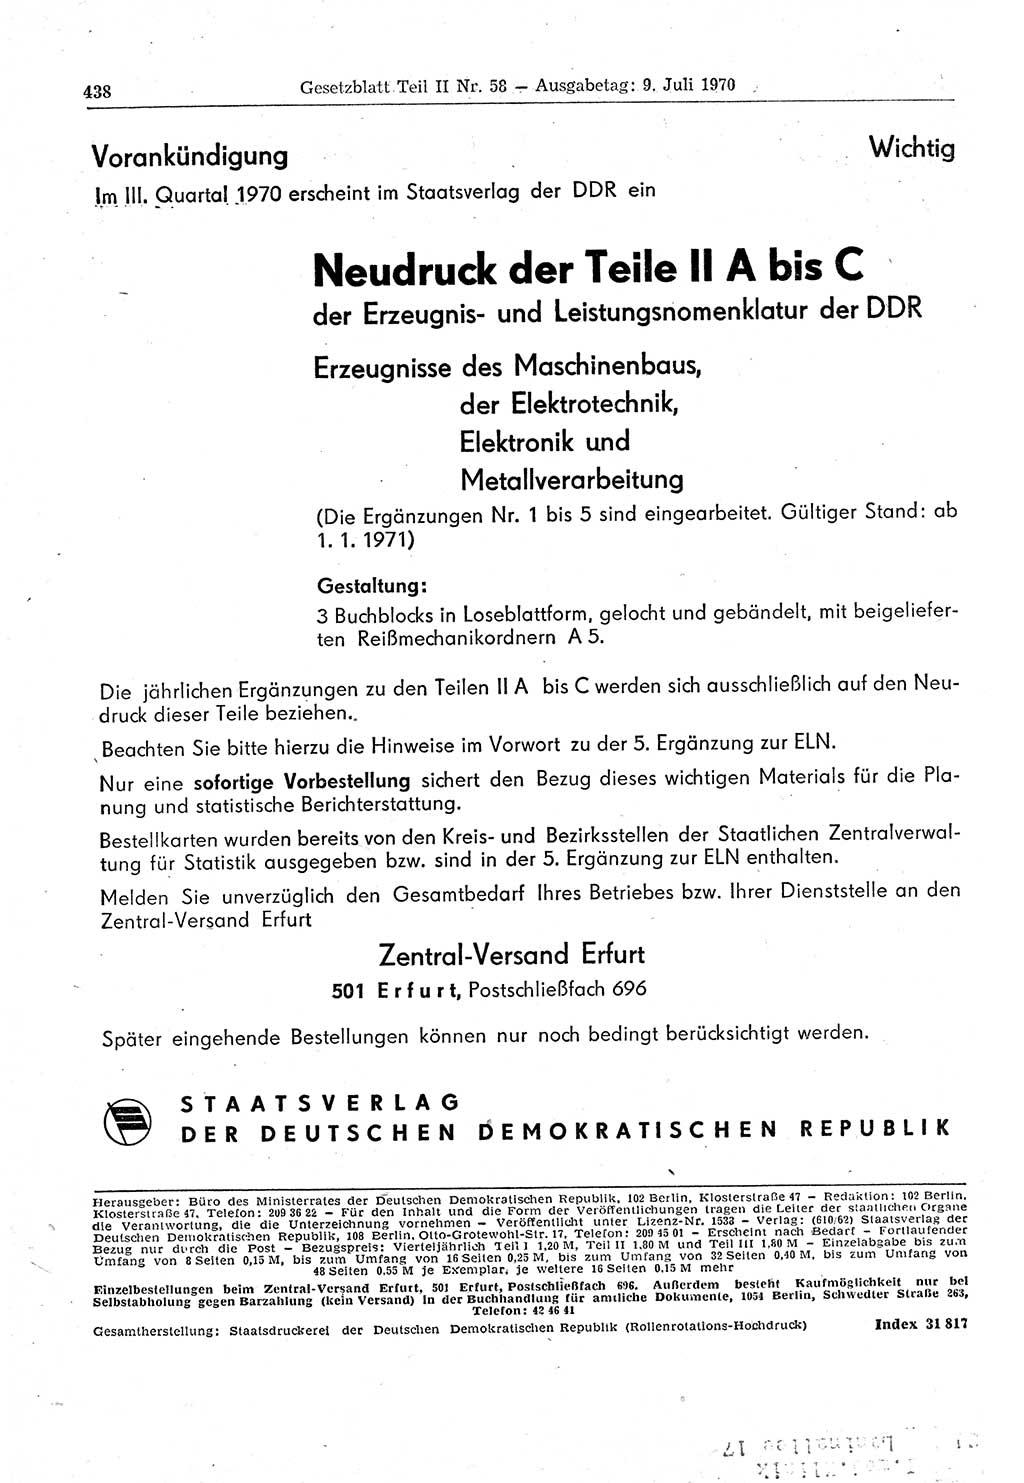 Gesetzblatt (GBl.) der Deutschen Demokratischen Republik (DDR) Teil ⅠⅠ 1970, Seite 438 (GBl. DDR ⅠⅠ 1970, S. 438)